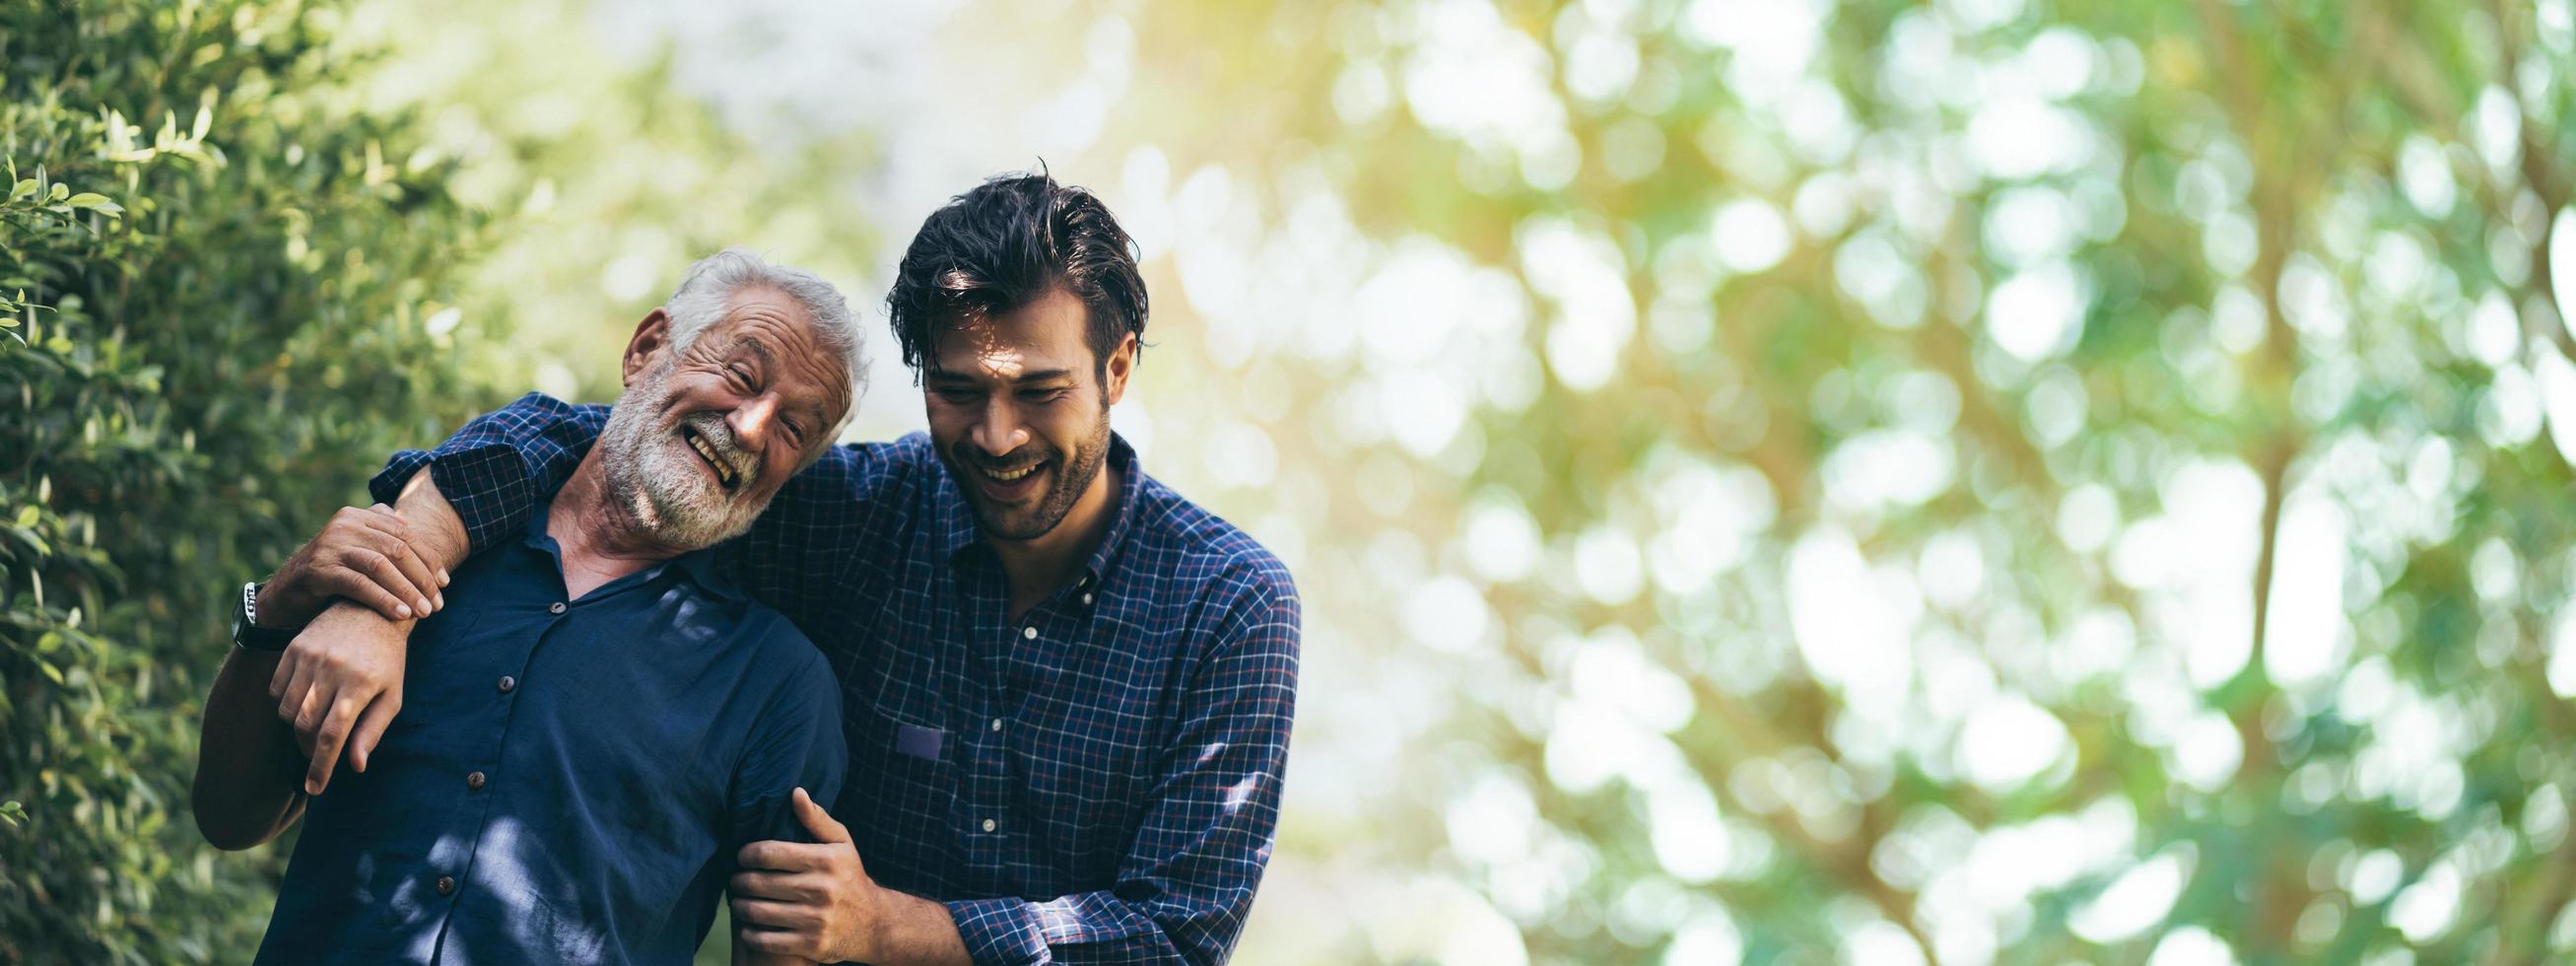 älterer vater, der erwachsenen hipster-sohn umarmt, haben ein glückliches gefühl zusammen, älterer kaukasischer personmann oder großvater, der mit liebe im konzept der familie zu hause naturgarten im freien lächelt, bannerraum foto